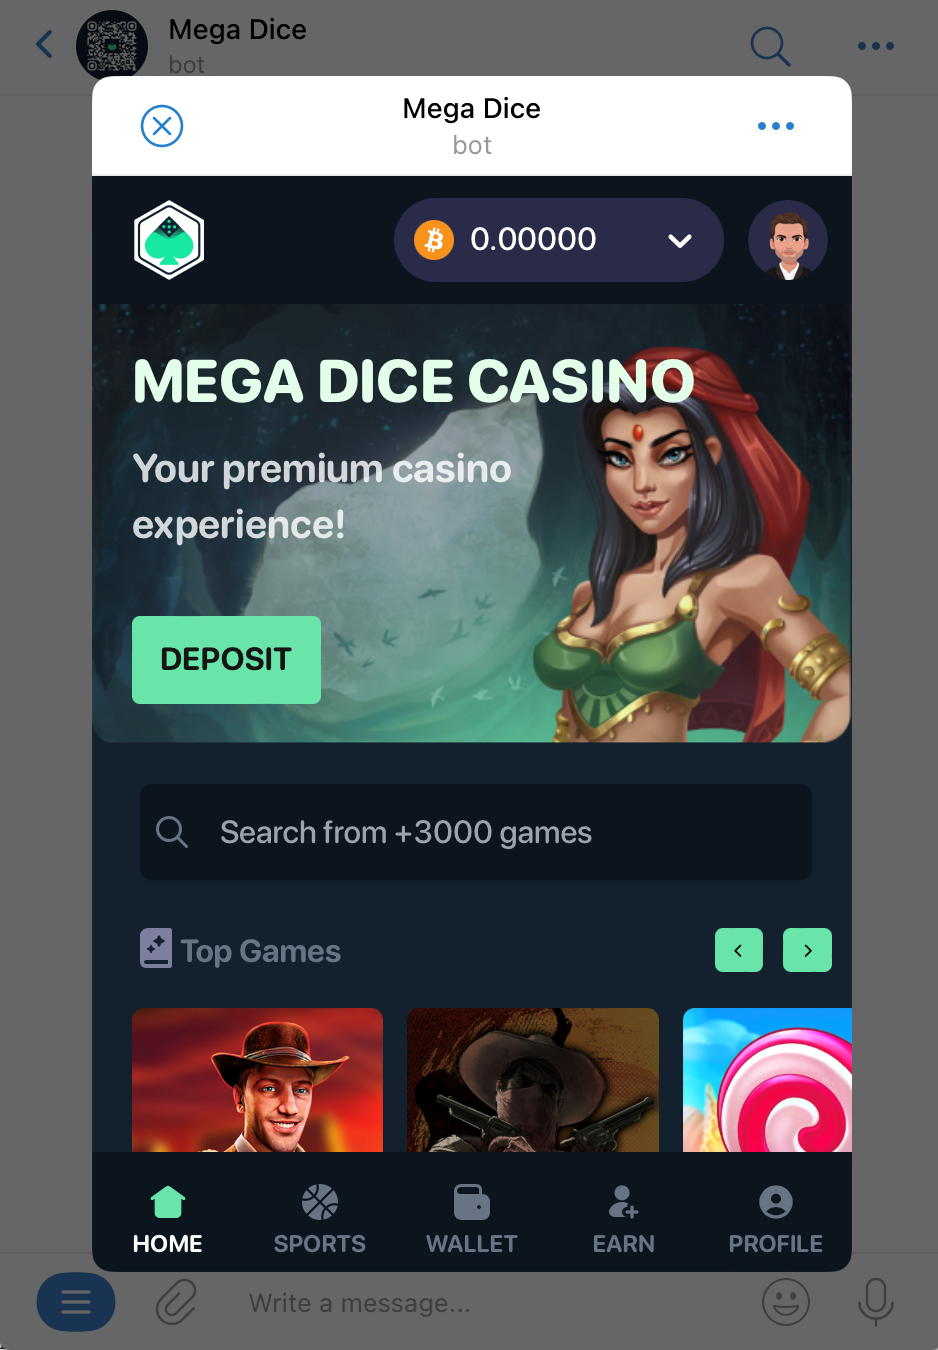 Mega Dice casino on Telegram | DeviceDaily.com